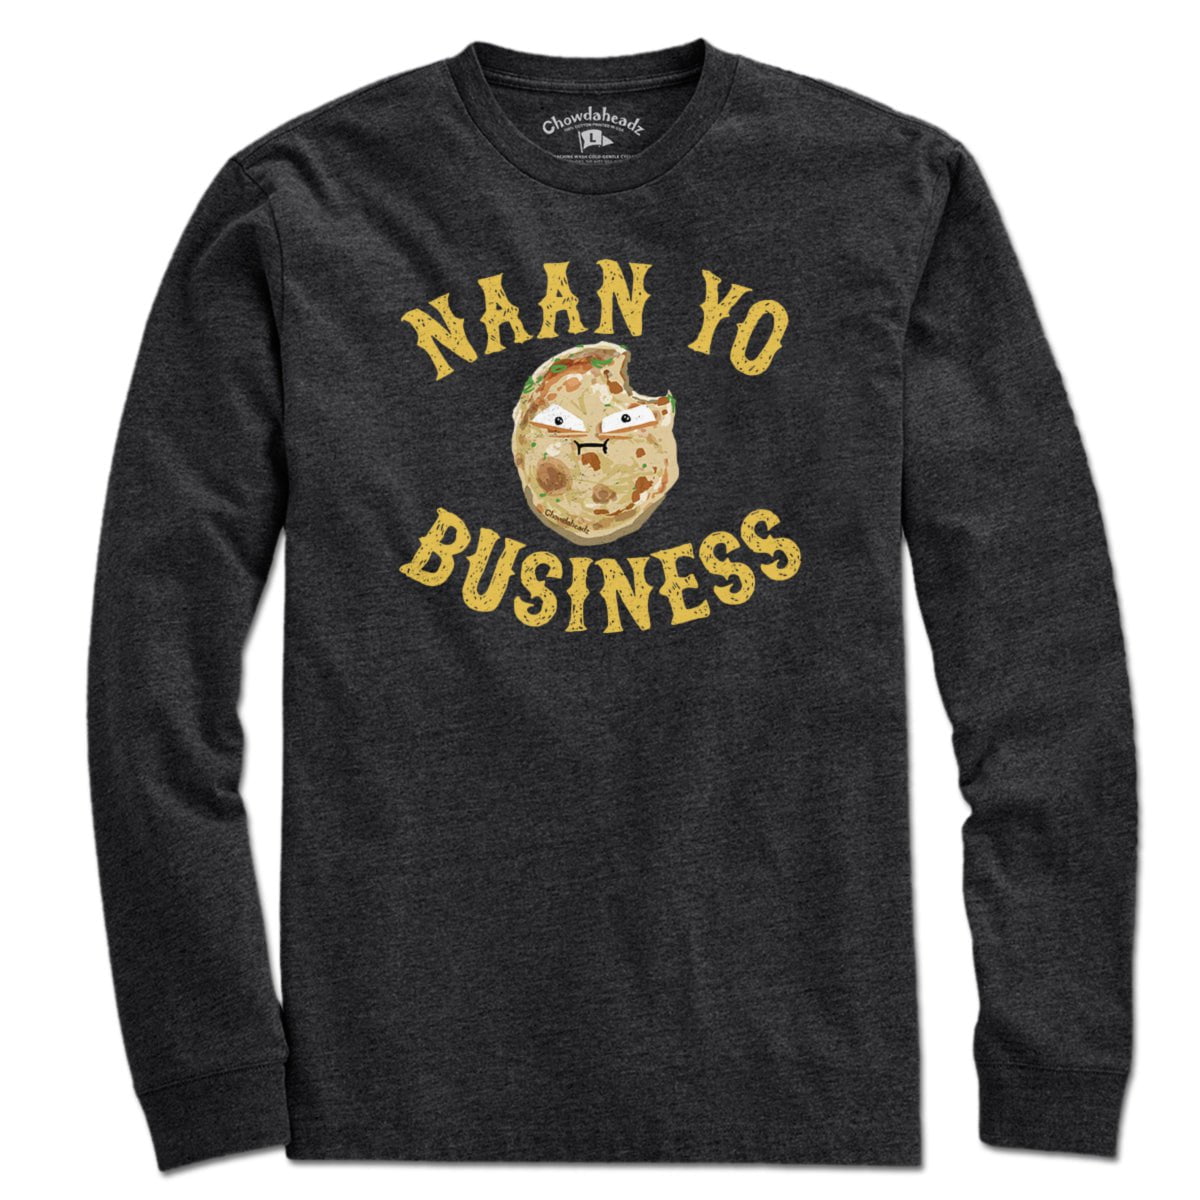 NAAN Yo Business T-Shirt - Chowdaheadz